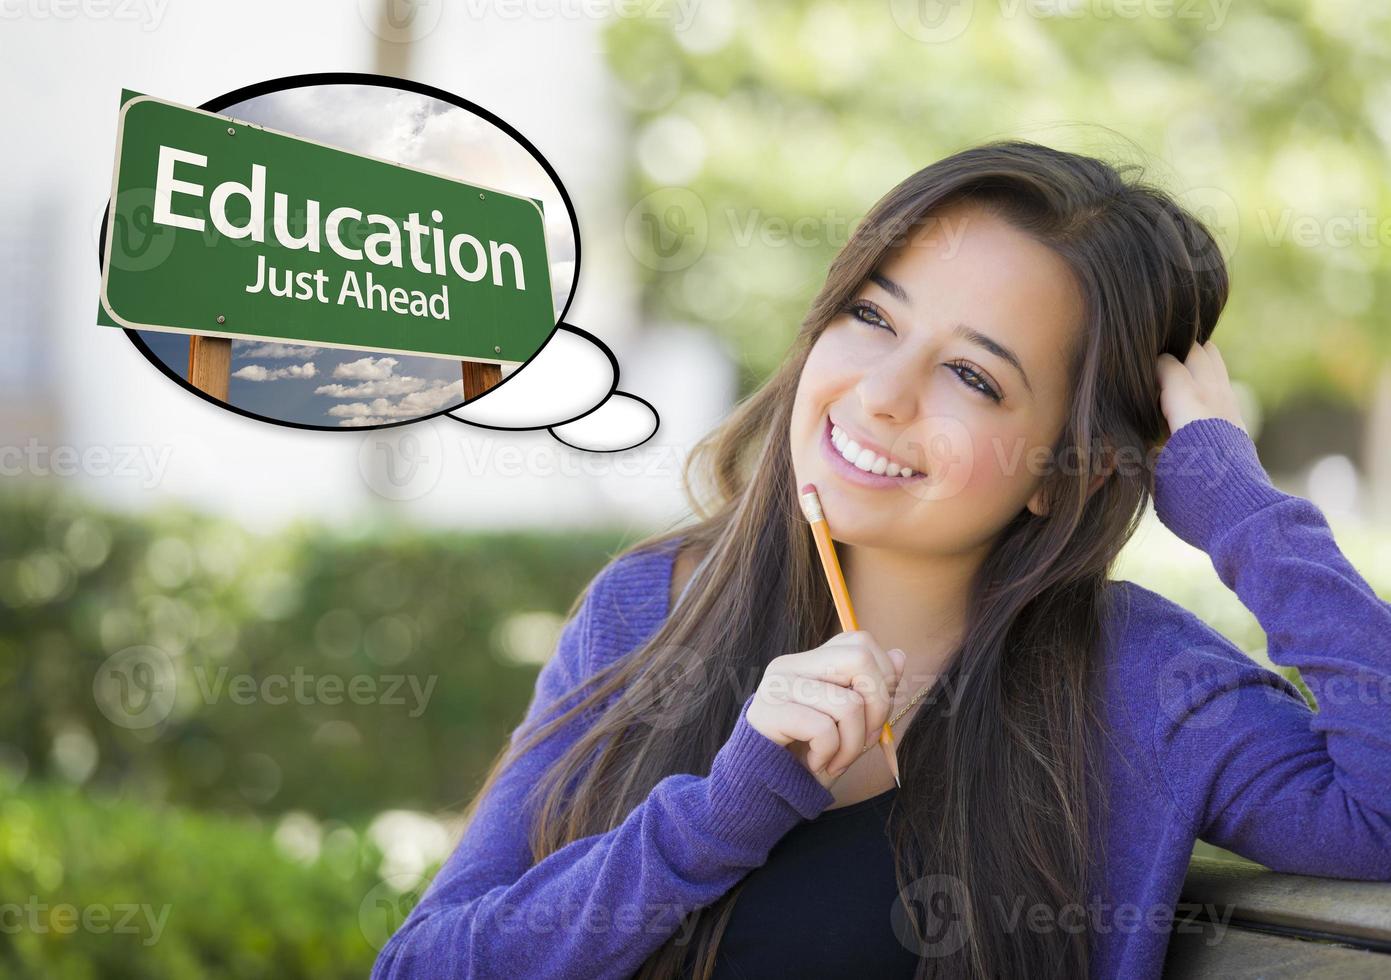 jovem mulher com balão de pensamento de educação sinal de estrada verde foto